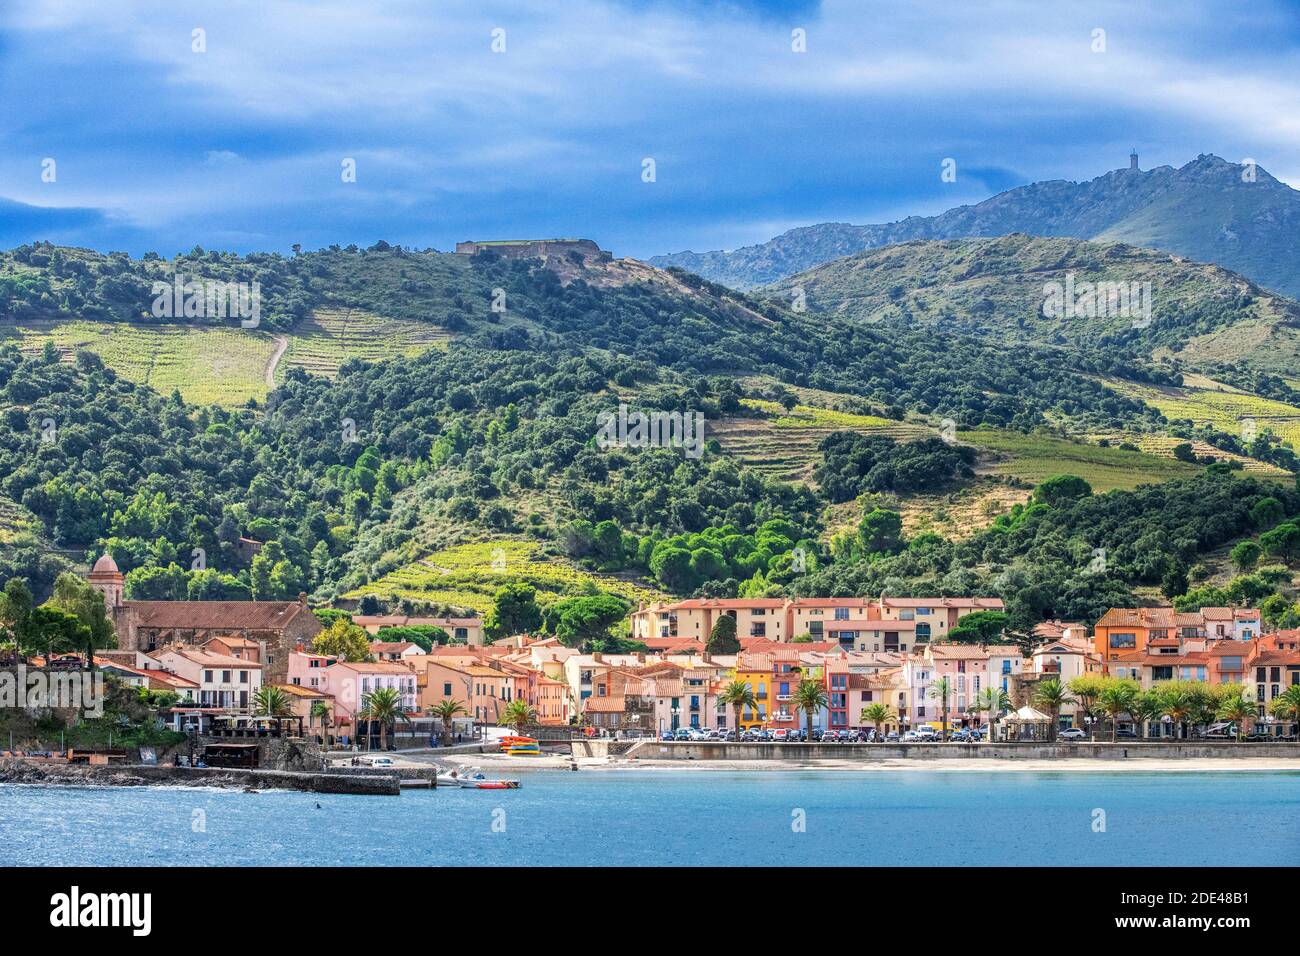 Landschaft Strand am Meer des malerischen Dorfes Collioure, in der Nähe von Perpignan im Süden von Frankreich Languedoc-Roussillon Cote Vermeille Midi Pyrenees O Stockfoto